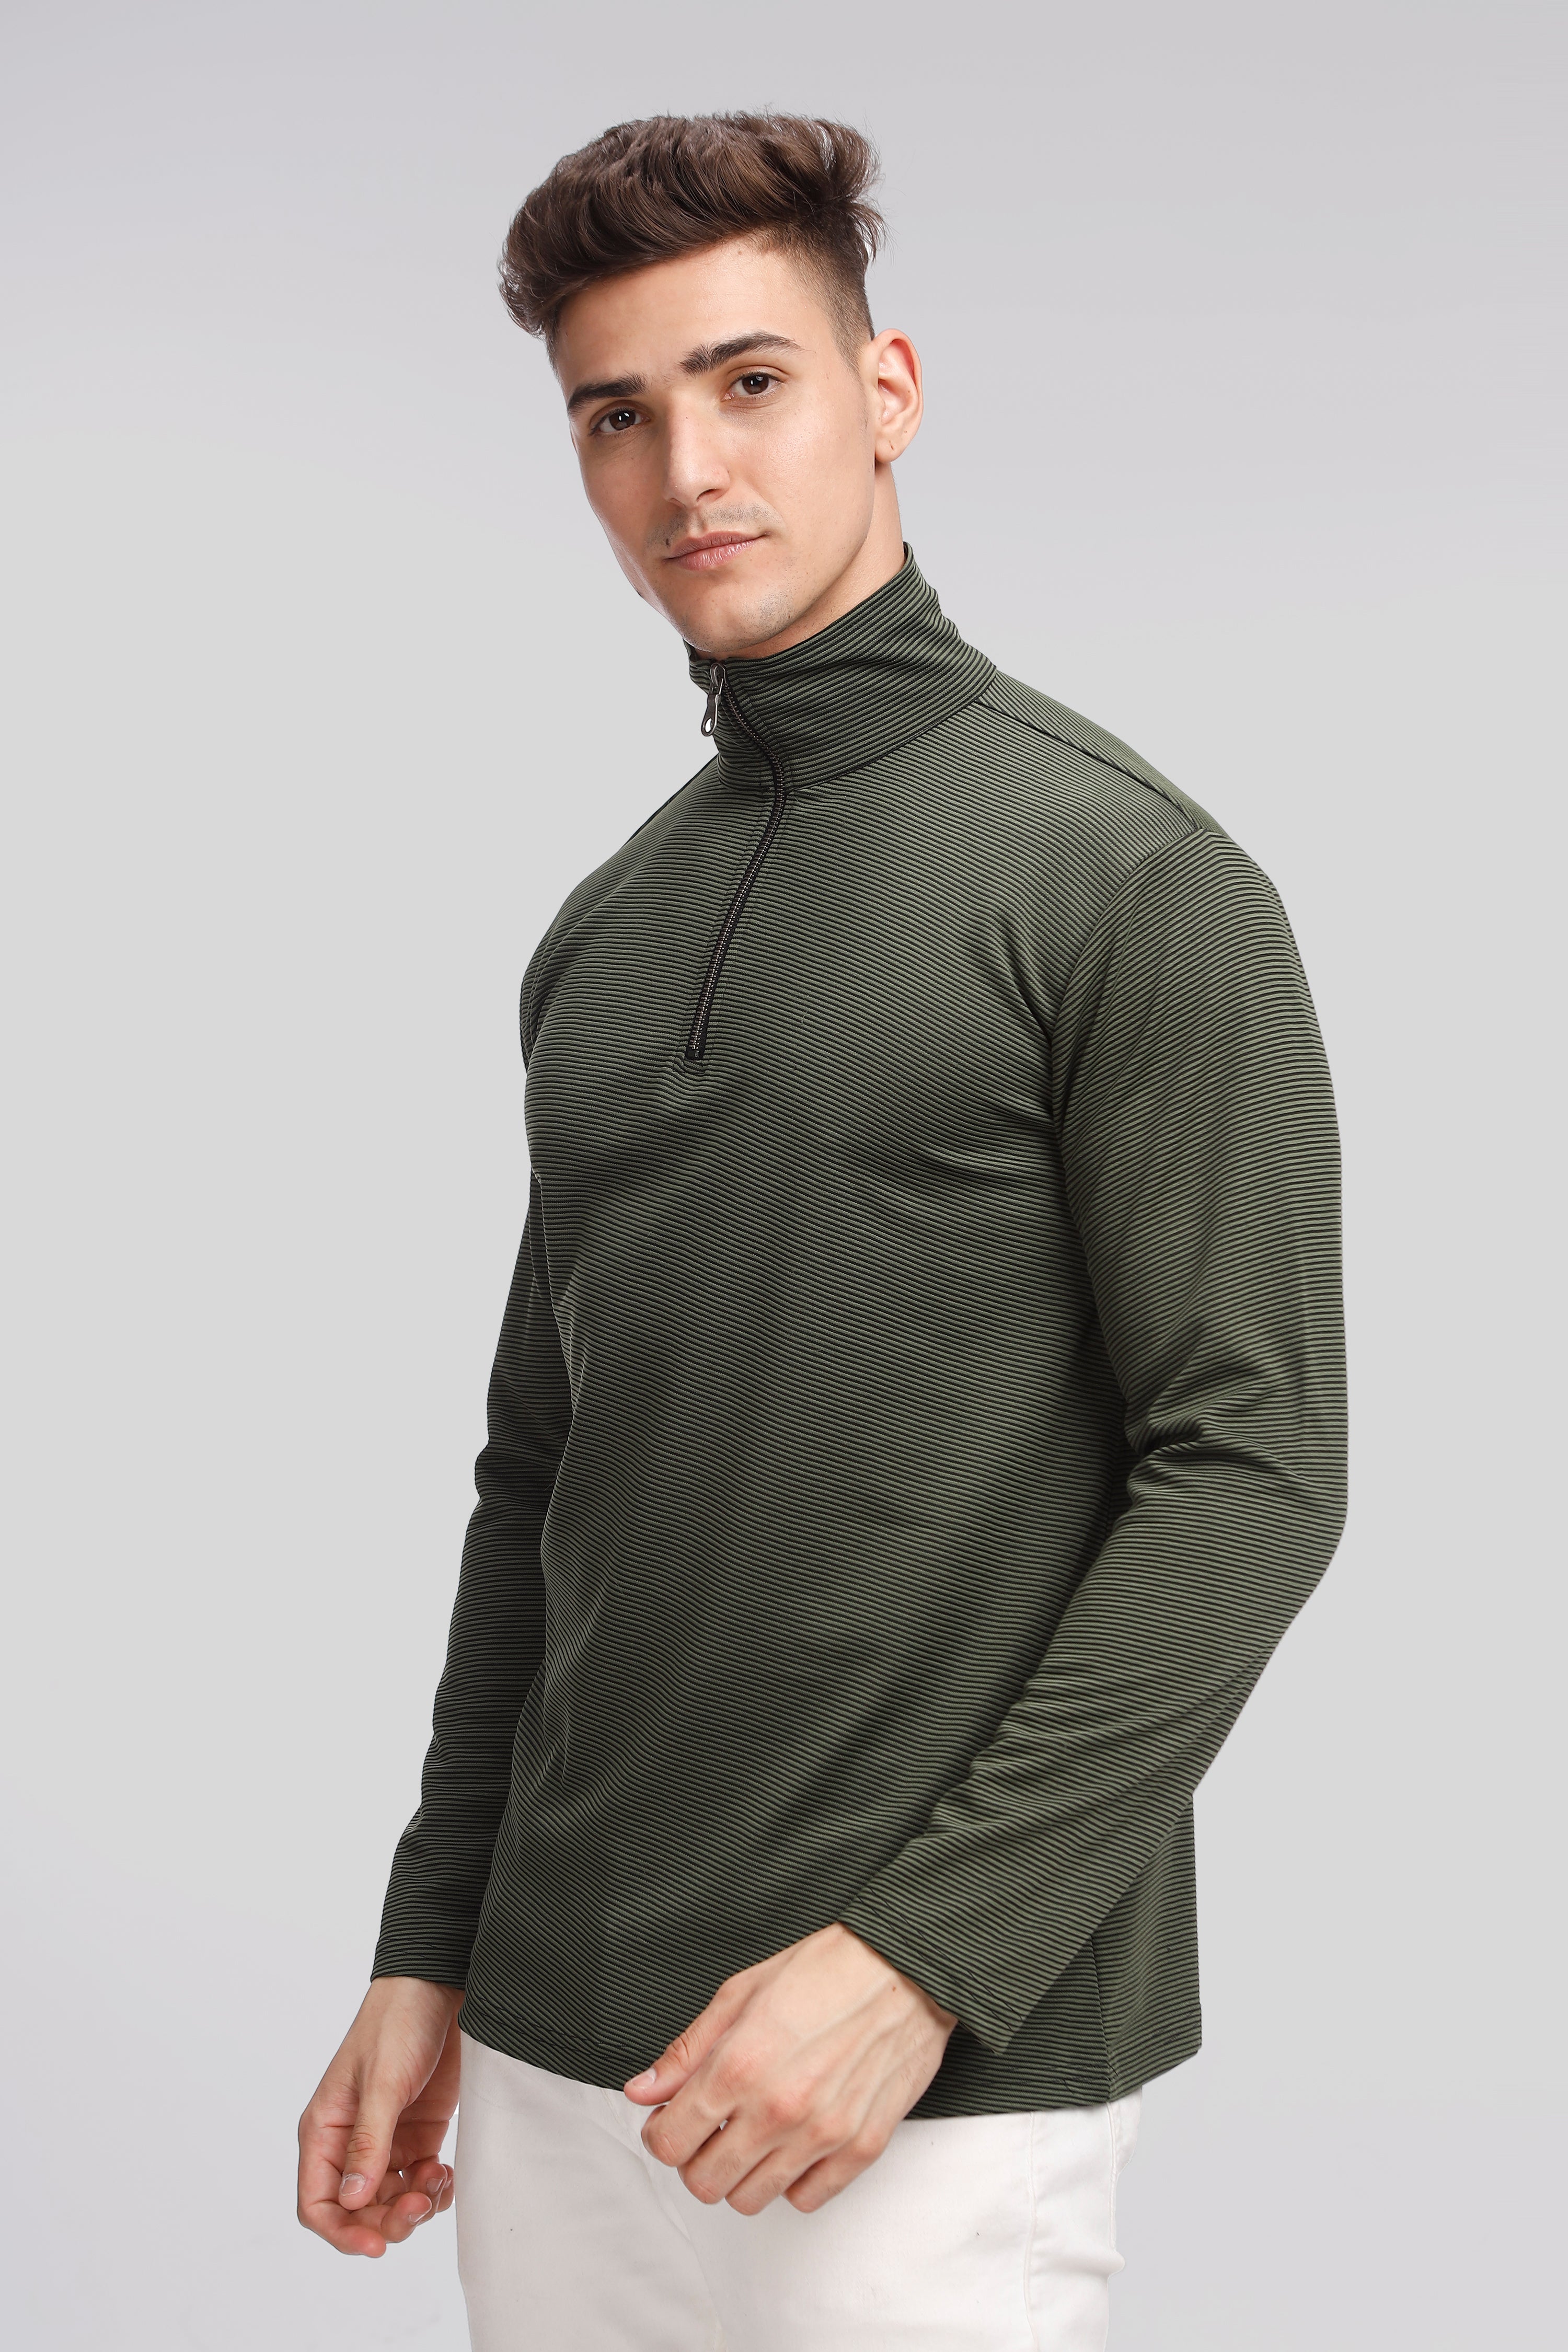 Green Stripes Self Design Zipper T-Shirt